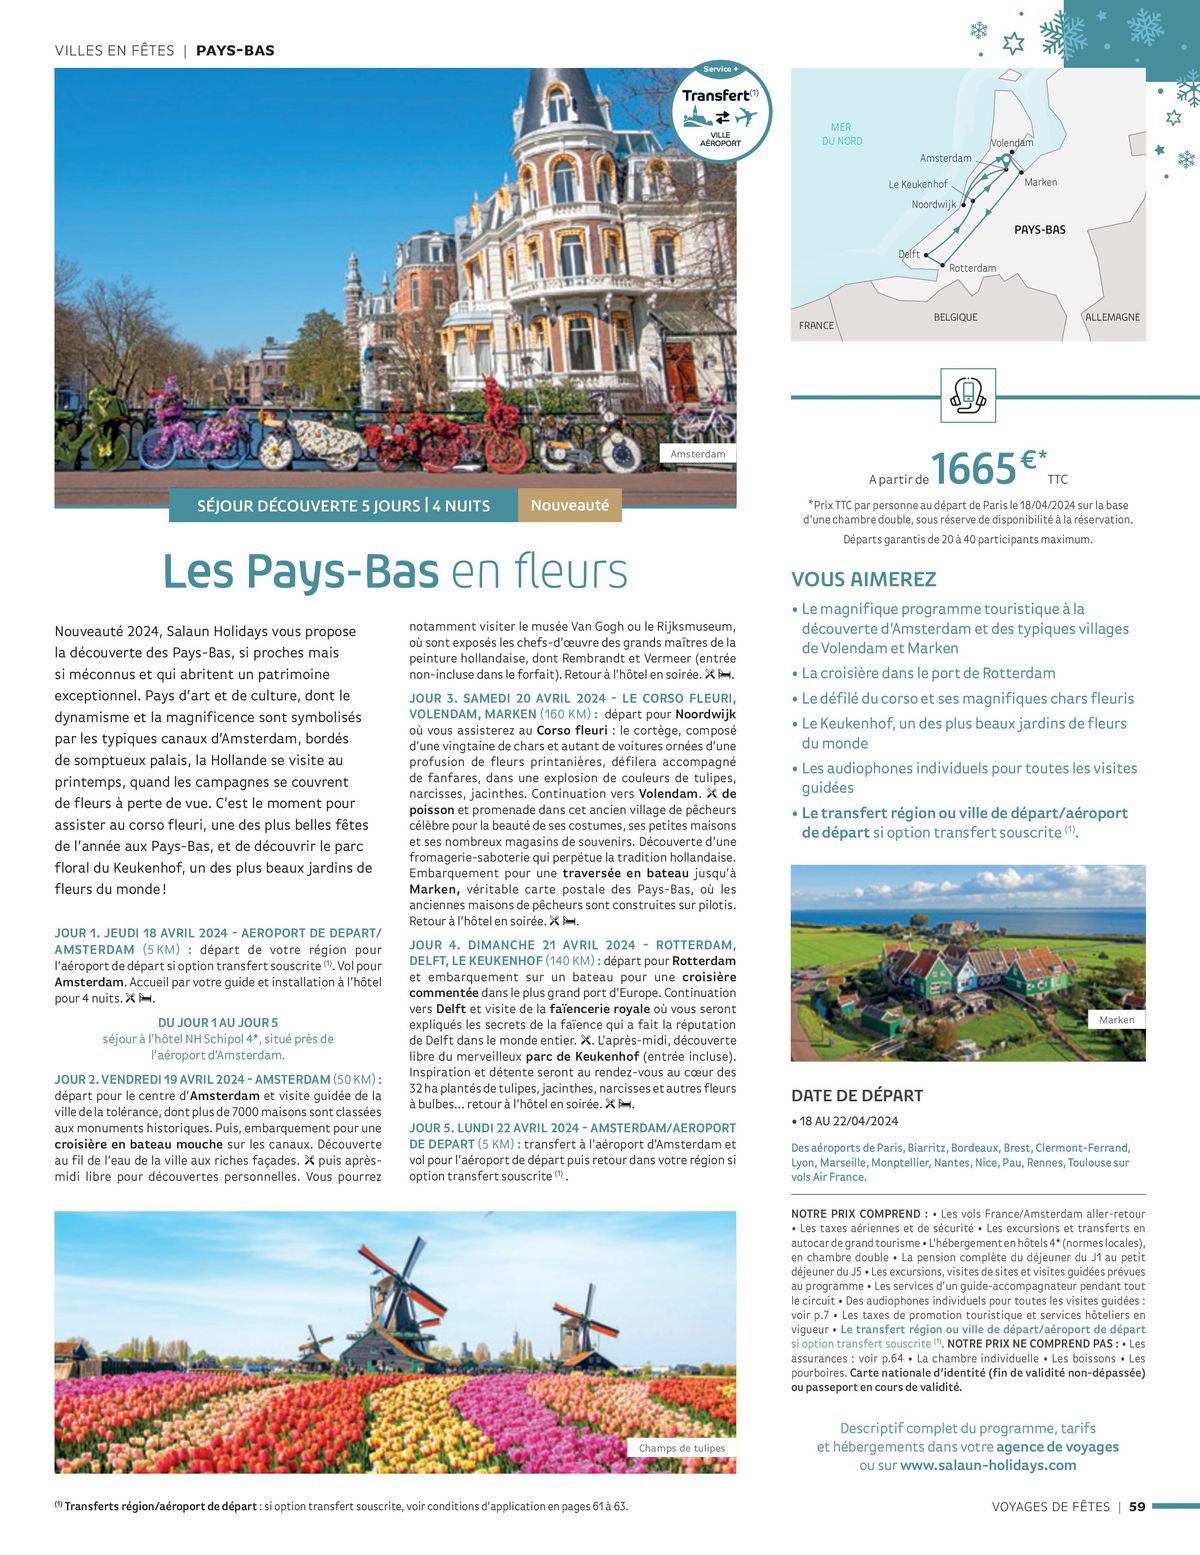 Catalogue Voyages de Fêtes 2023-2024, page 00059